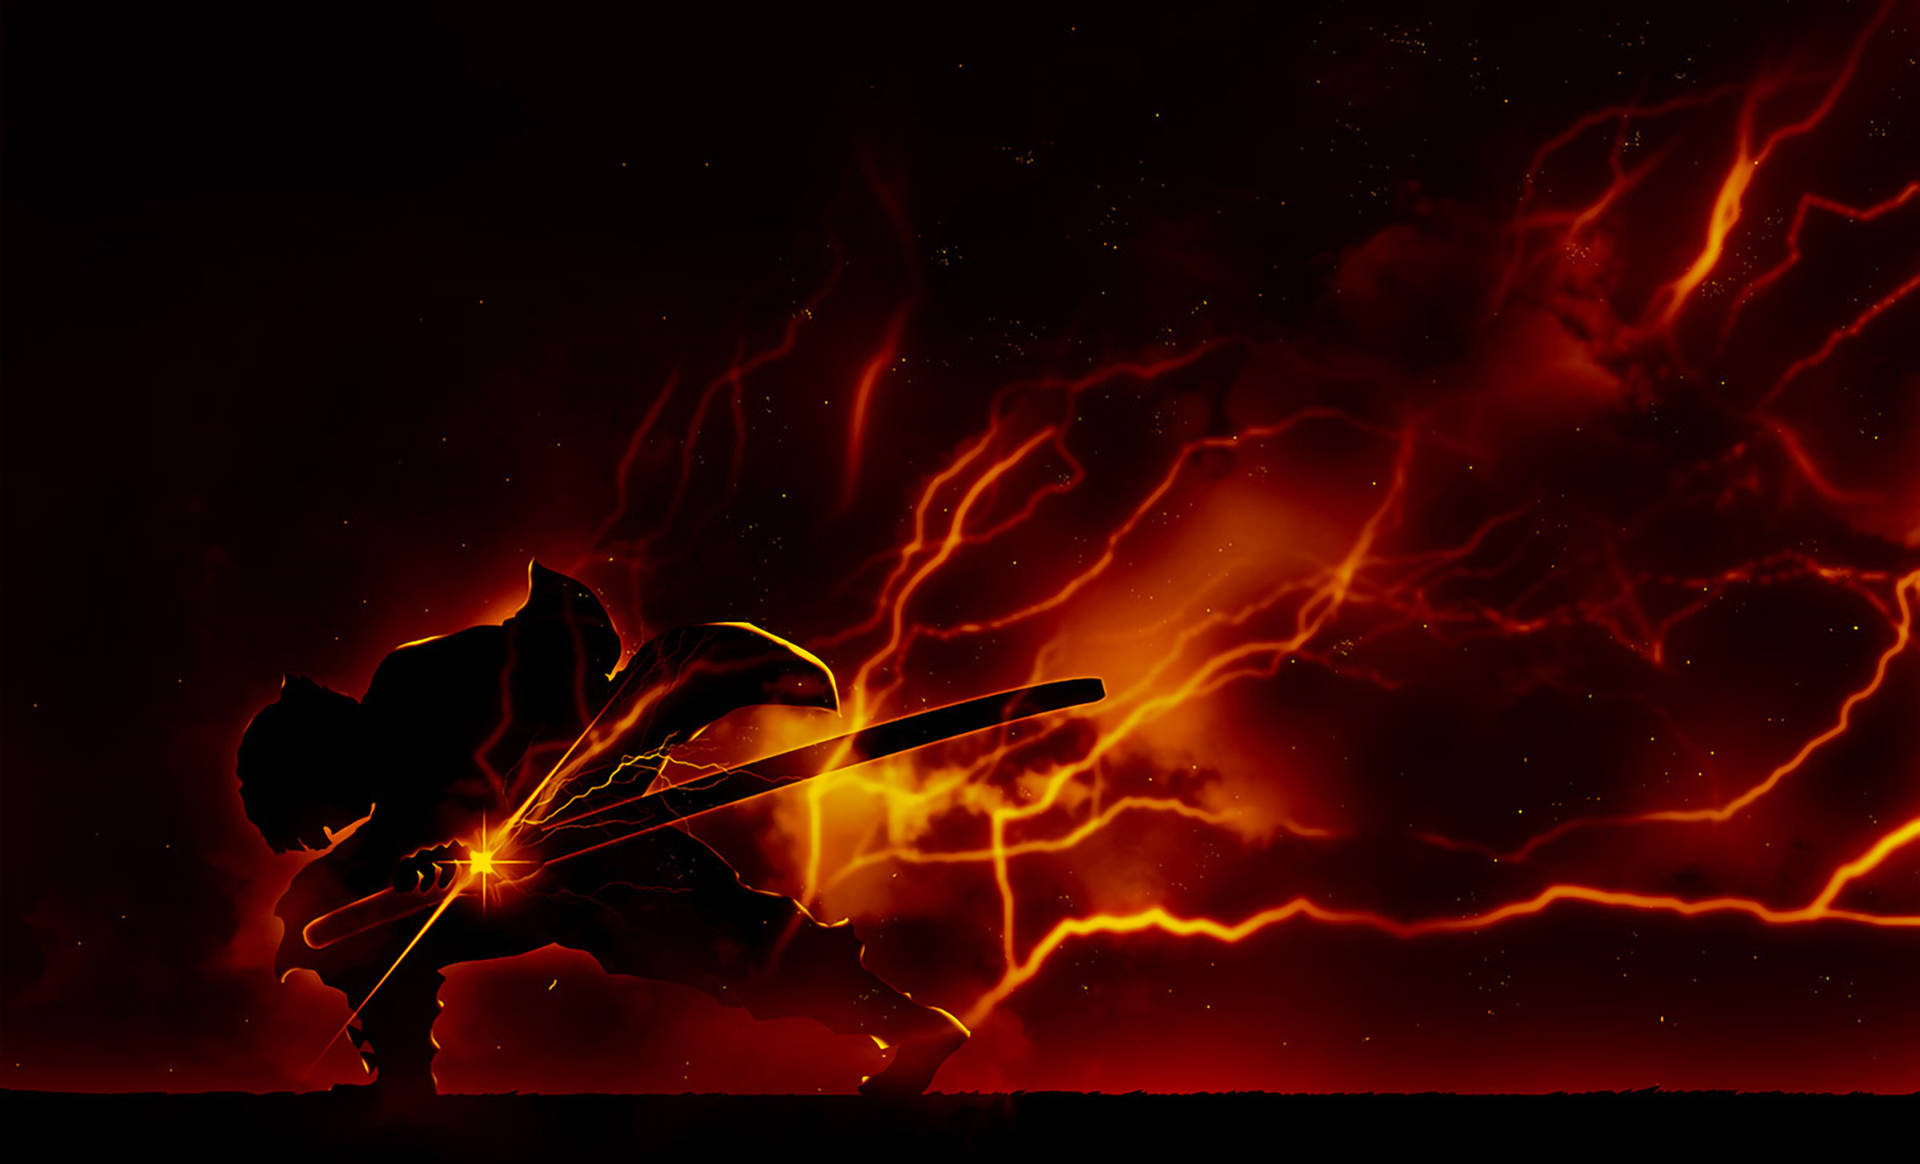 Zenitsu Orange Lightning